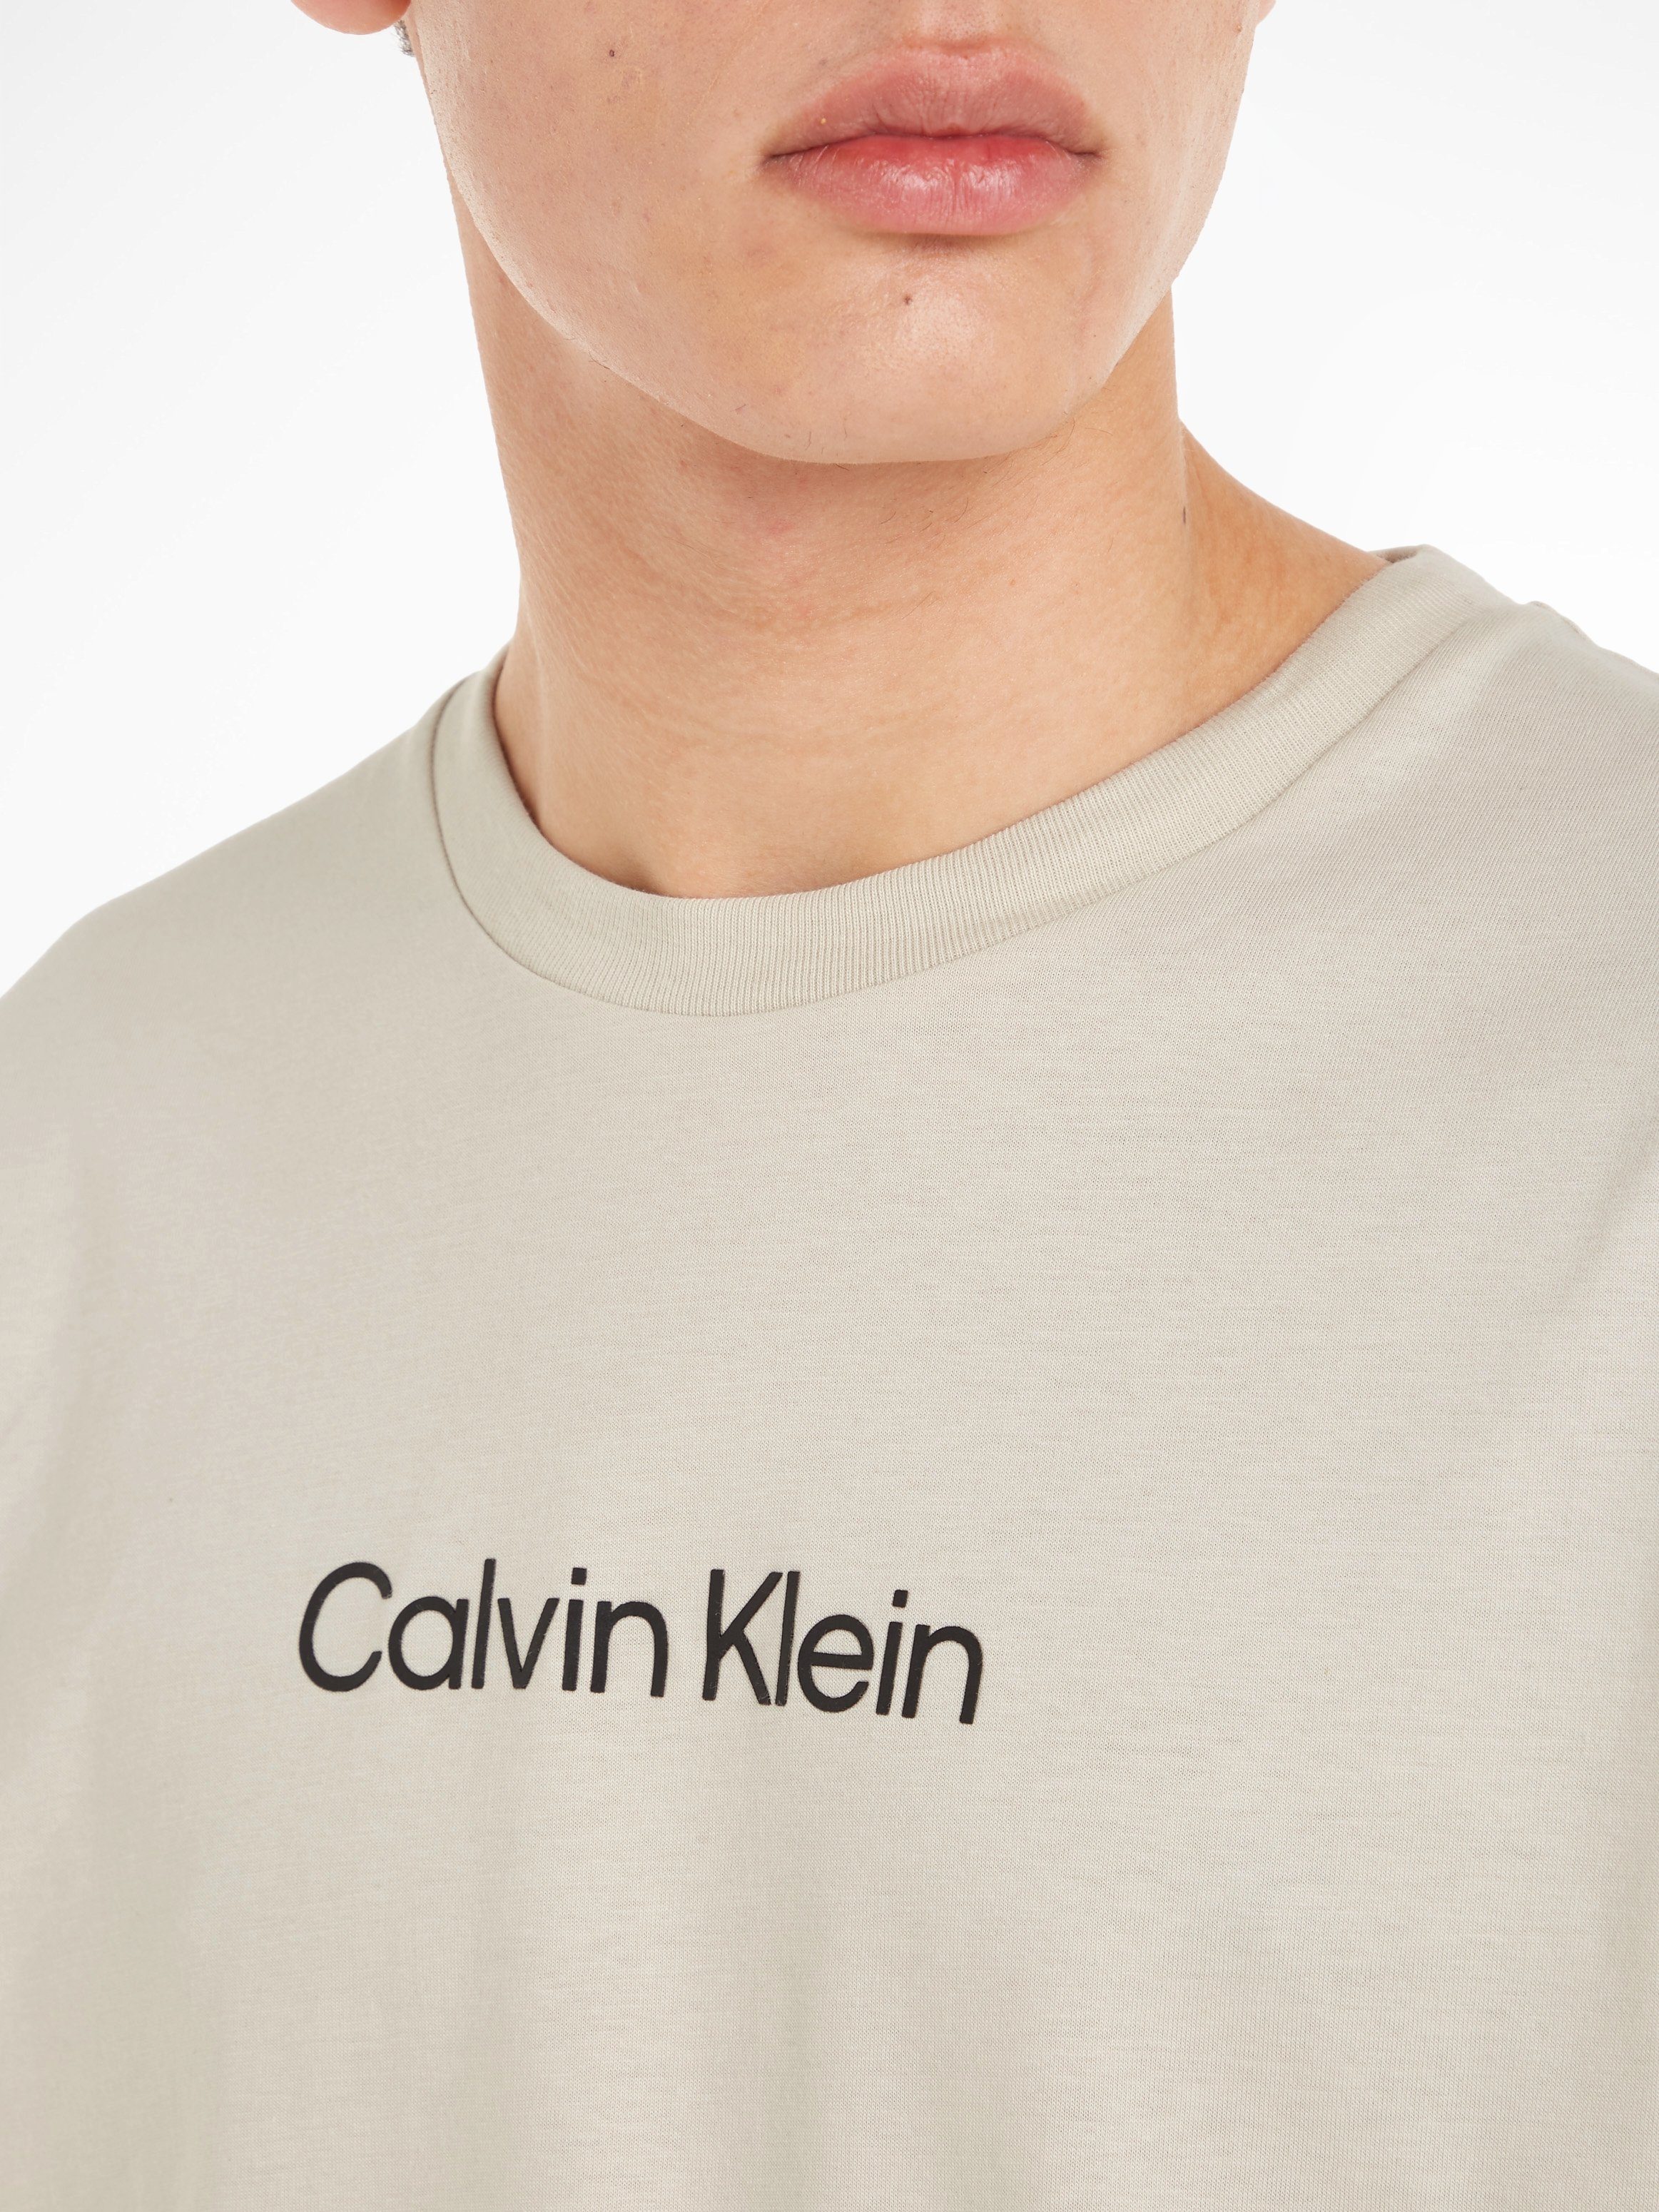 Calvin Klein T-Shirt HERO Beige Markenlabel aufgedrucktem LOGO COMFORT T-SHIRT mit Stony